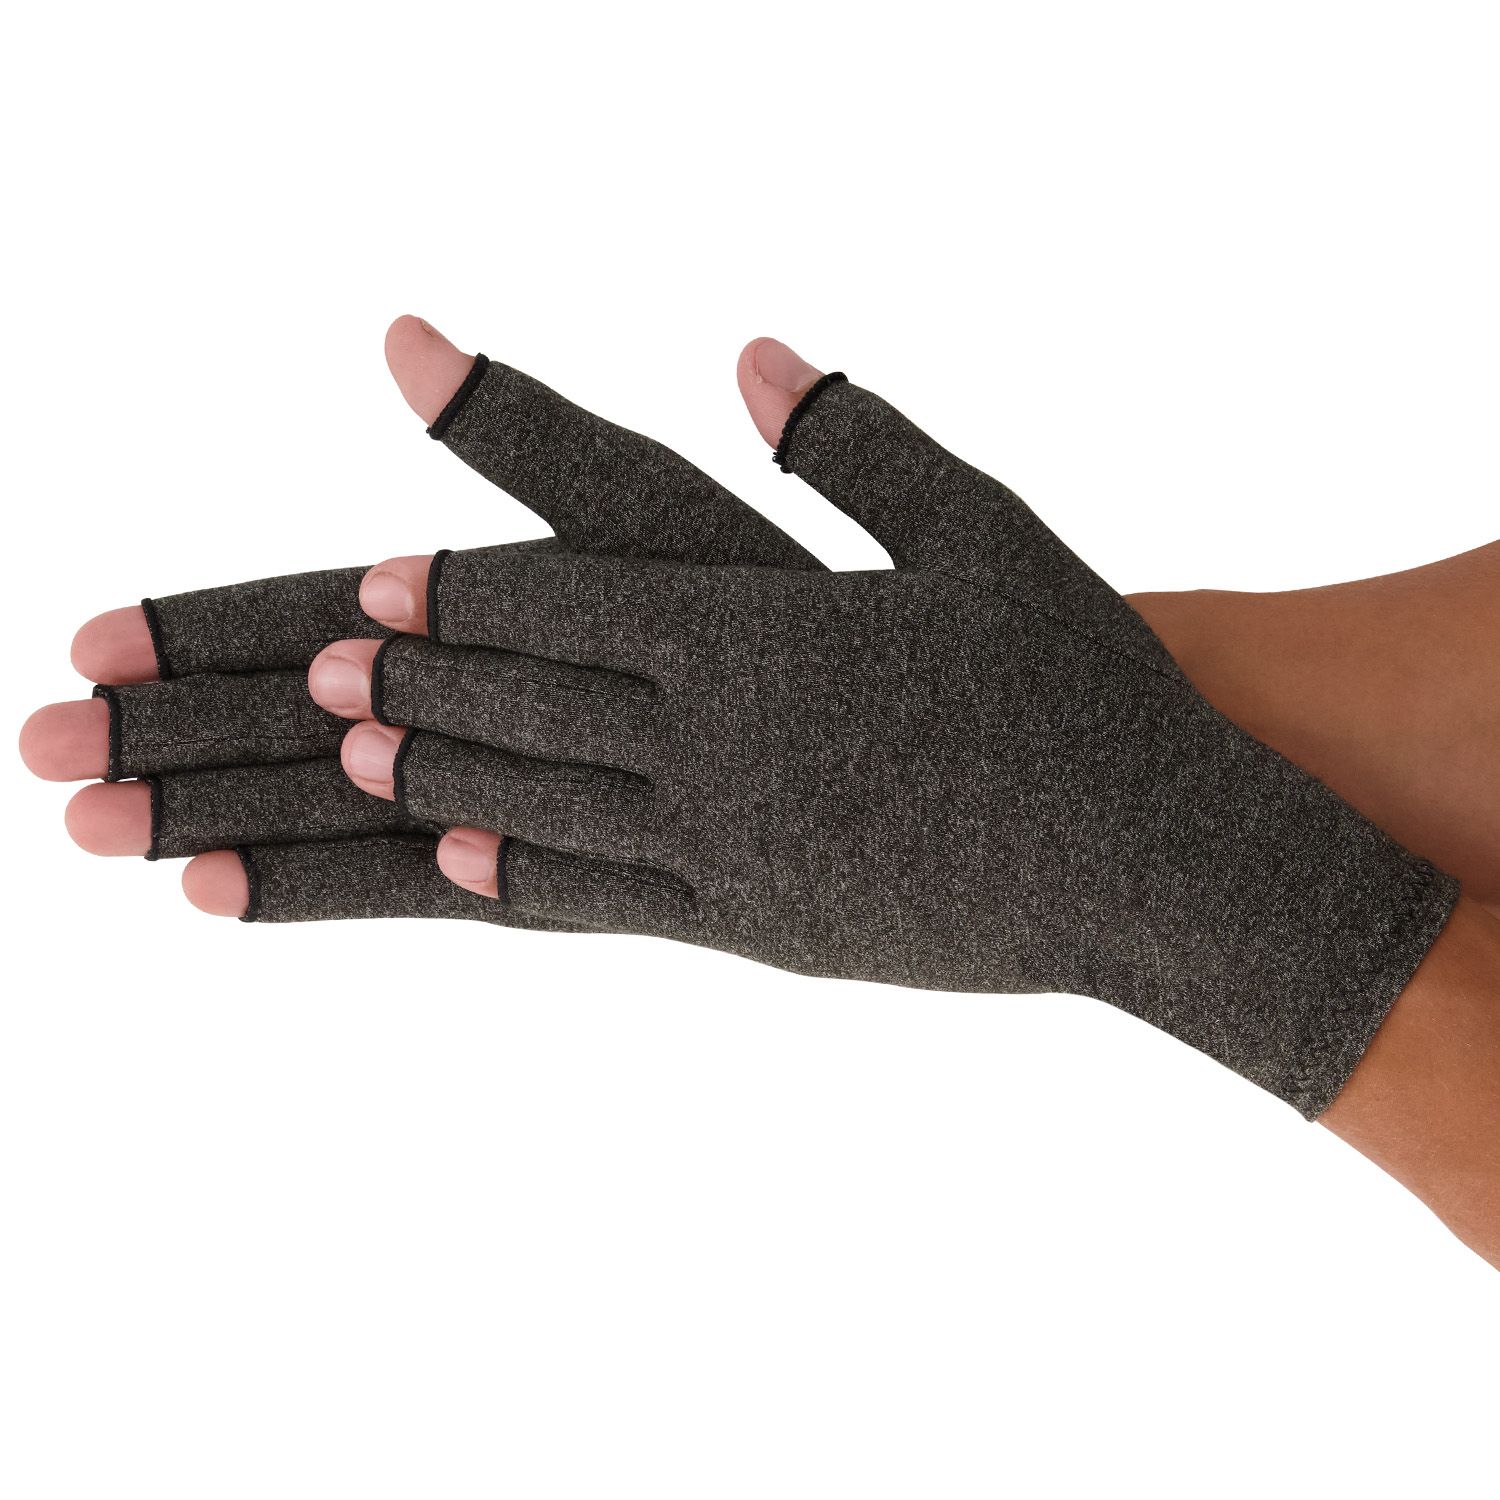 medidu rheumatoid arthritis osteoarthritis gloves in skin colour